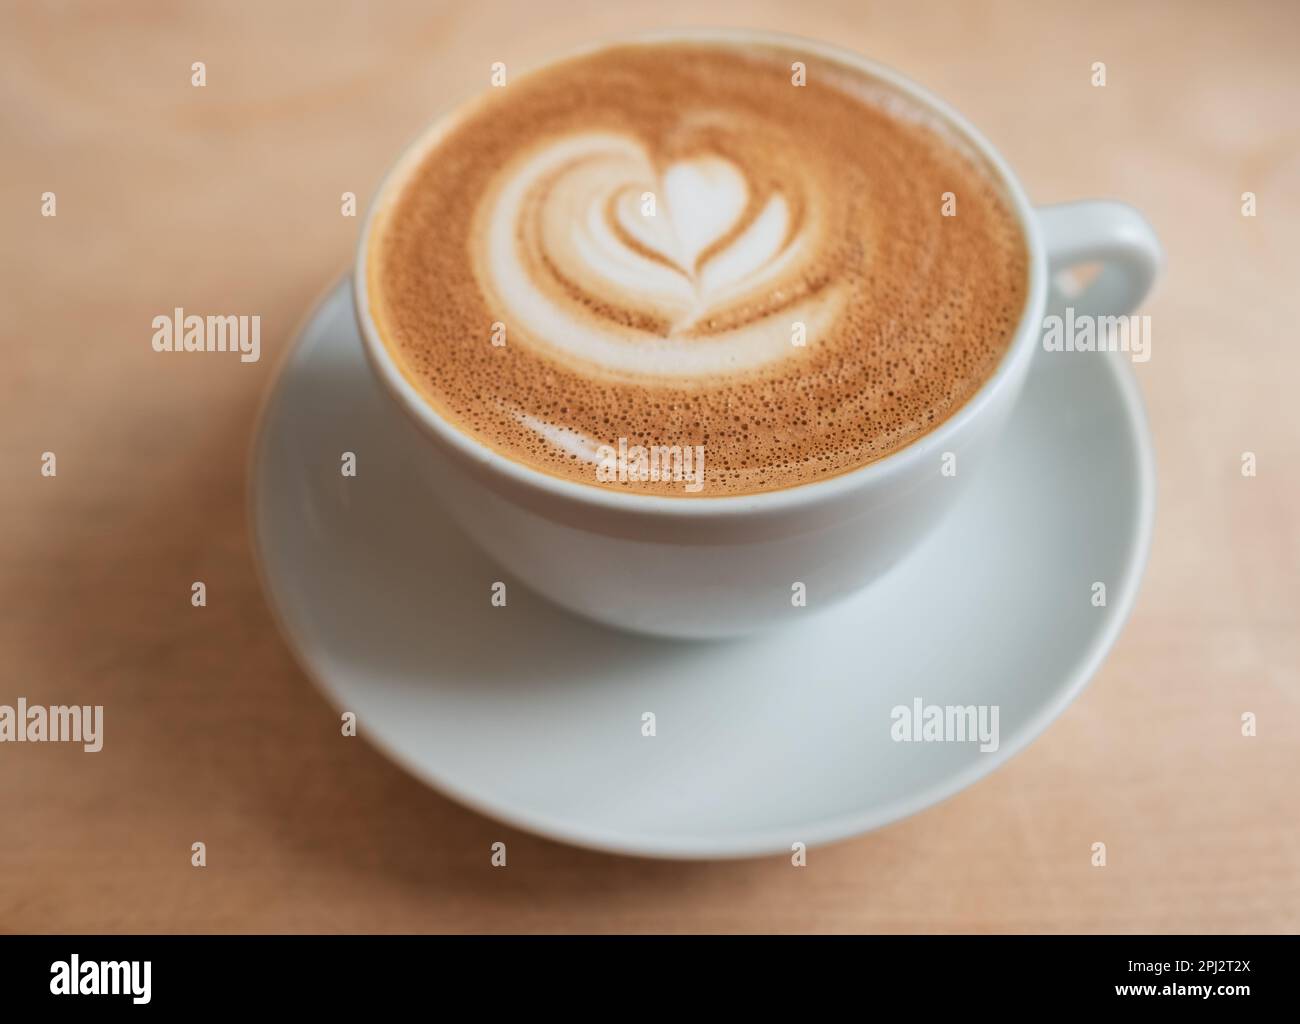 Guten Morgen Kaffee. Cappuccino mit Latte Art auf Holzhintergrund. Wunderschöner Schaum, Kaffeetasse auf einem rustikalen Tisch, gemütliches Frühstück, Vintage-Stil Stockfoto